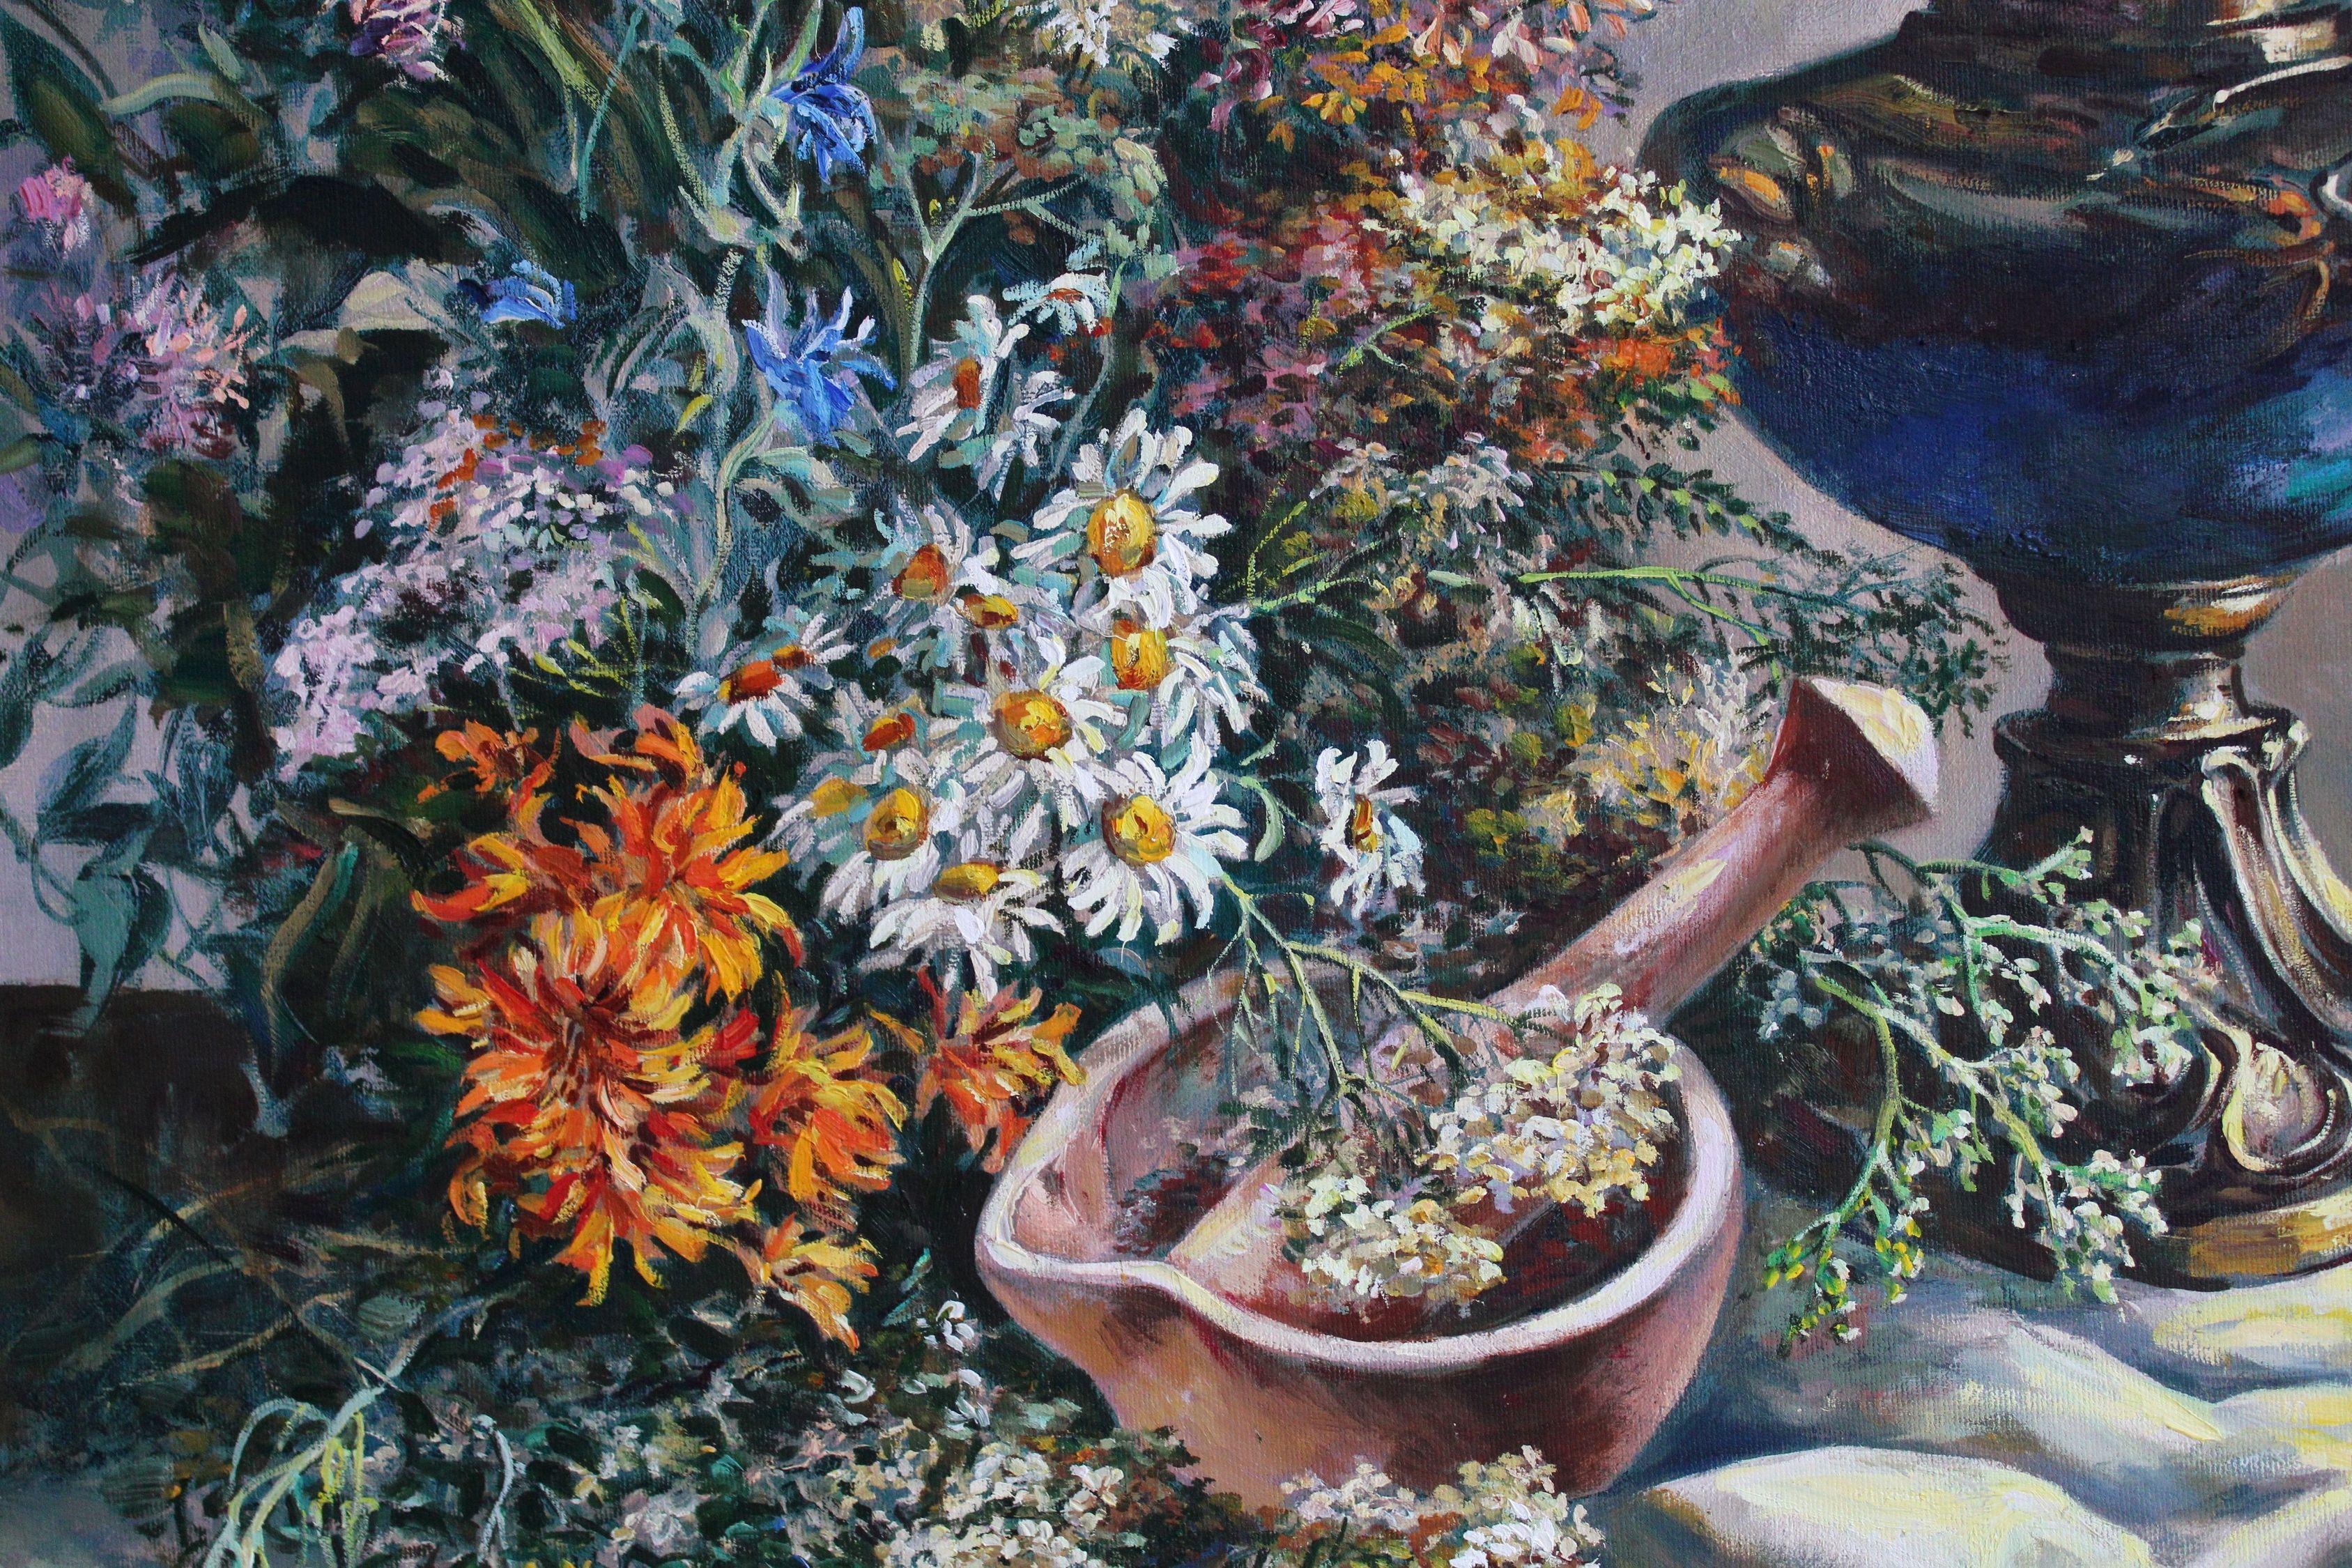 Stilleben mit Wildblumen. Öl auf Leinwand, 80,5x60,5 cm

